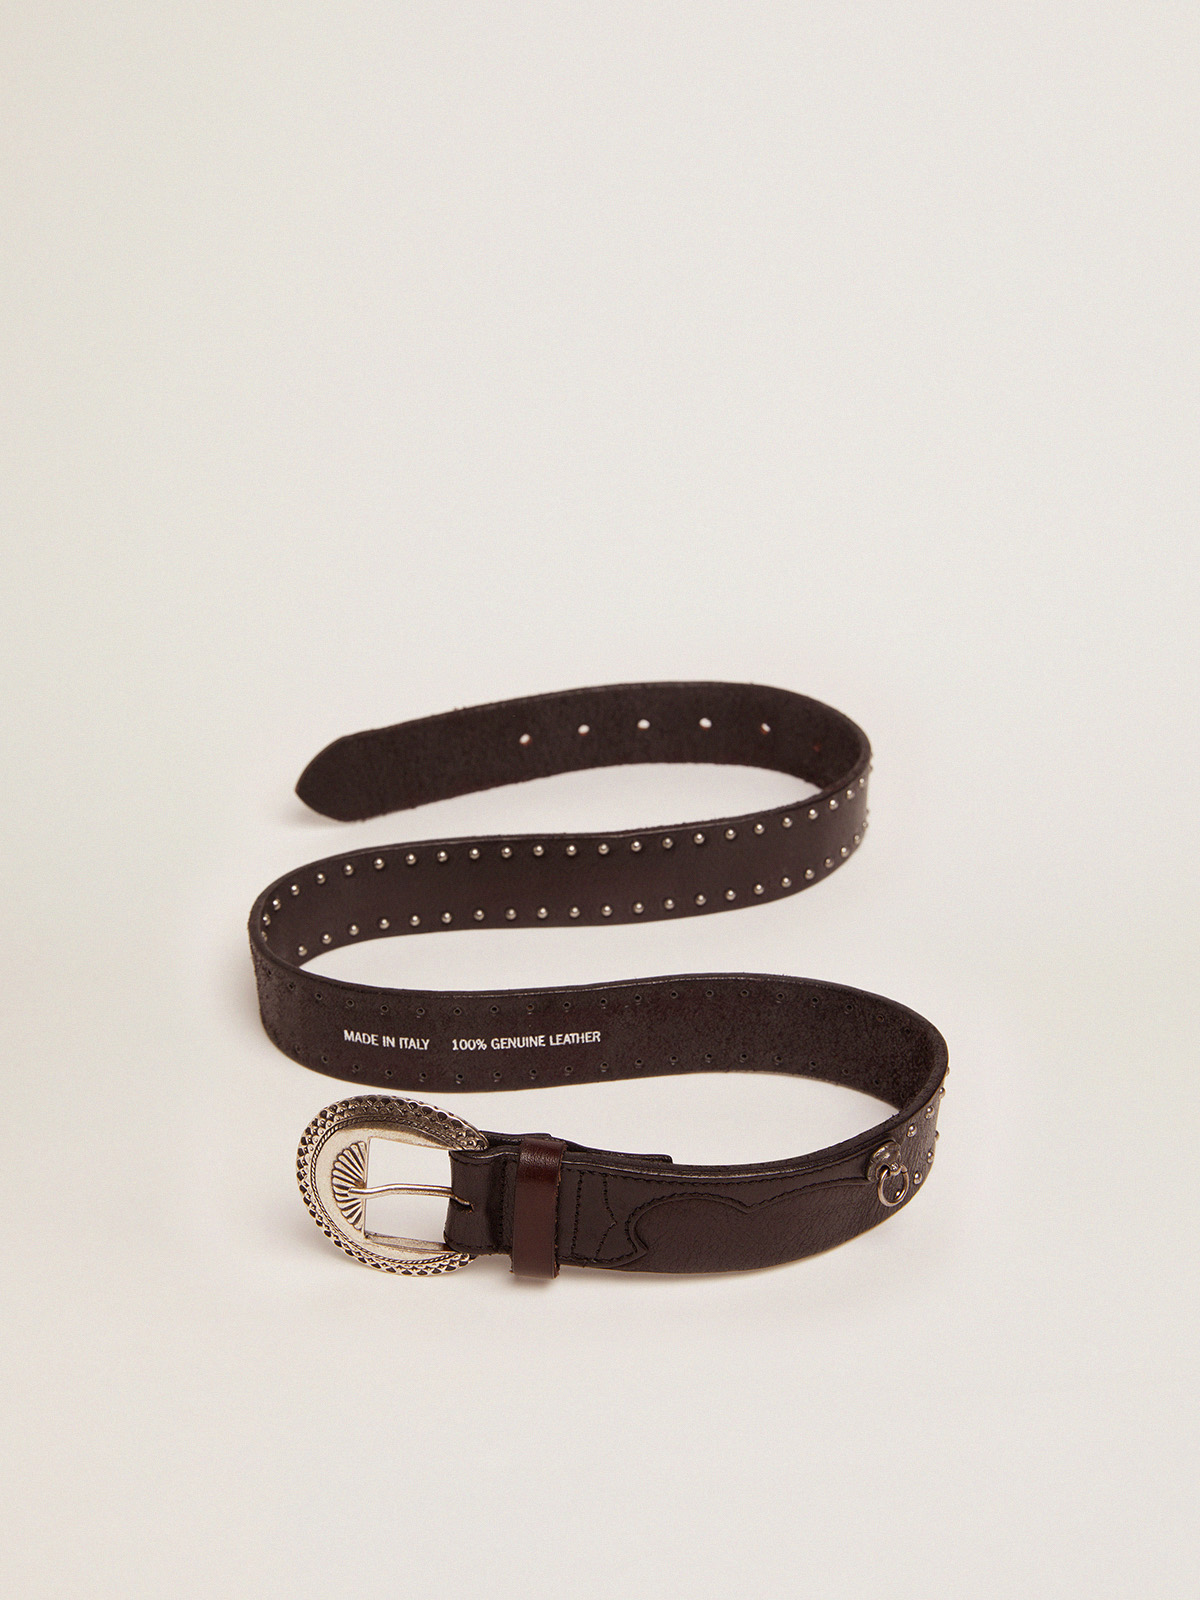 Louis Vuitton, A Louis Vuitton Black Leather Belt. Gilded monogram